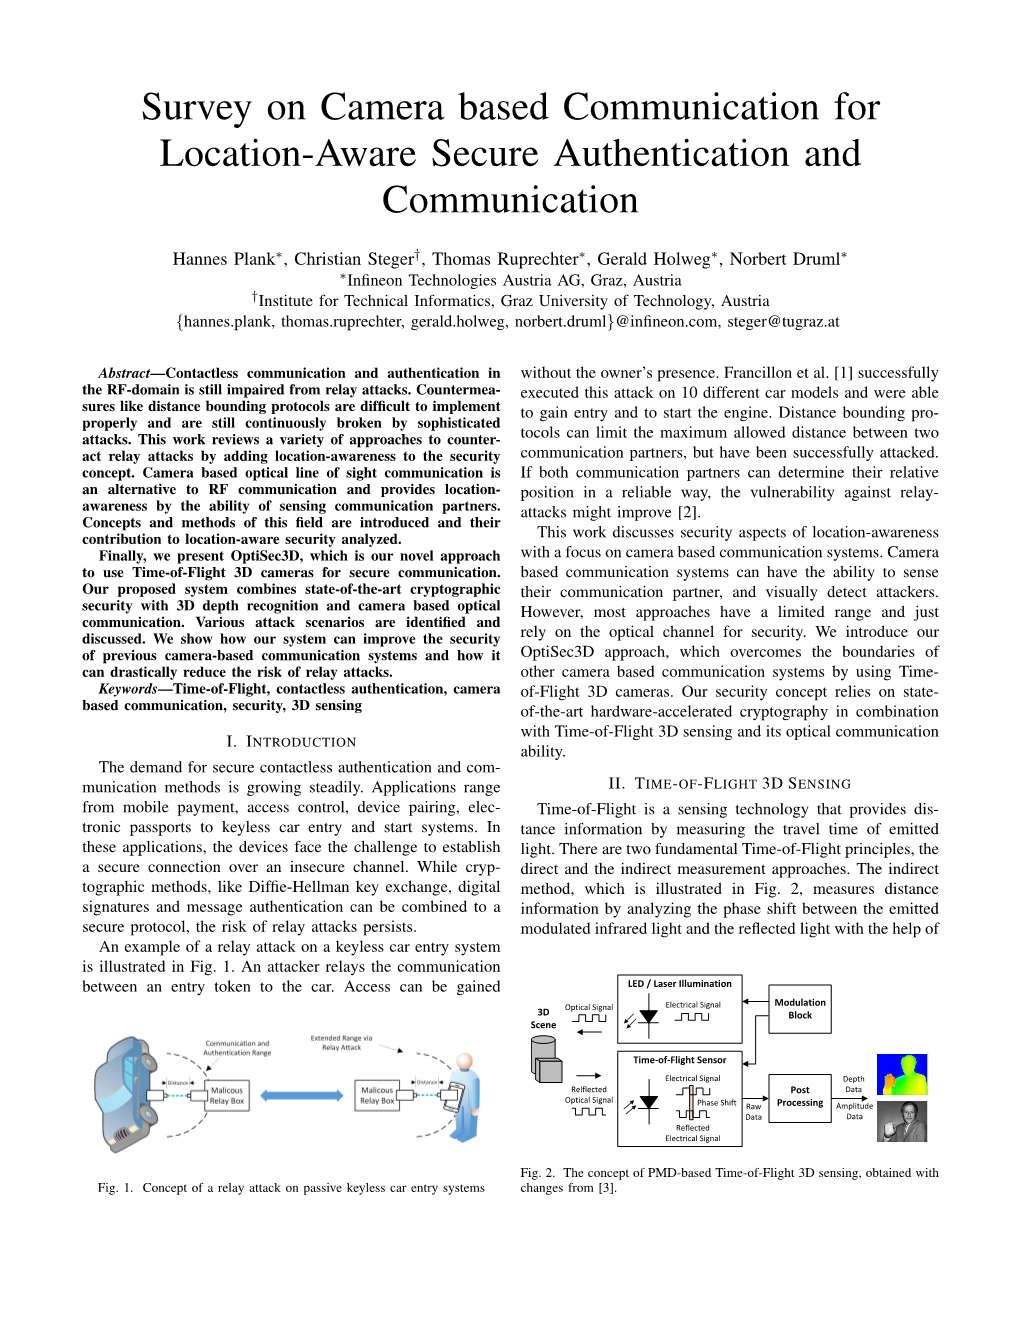 Survey on Camera Based Communication for Location-Aware Secure Authentication and Communication